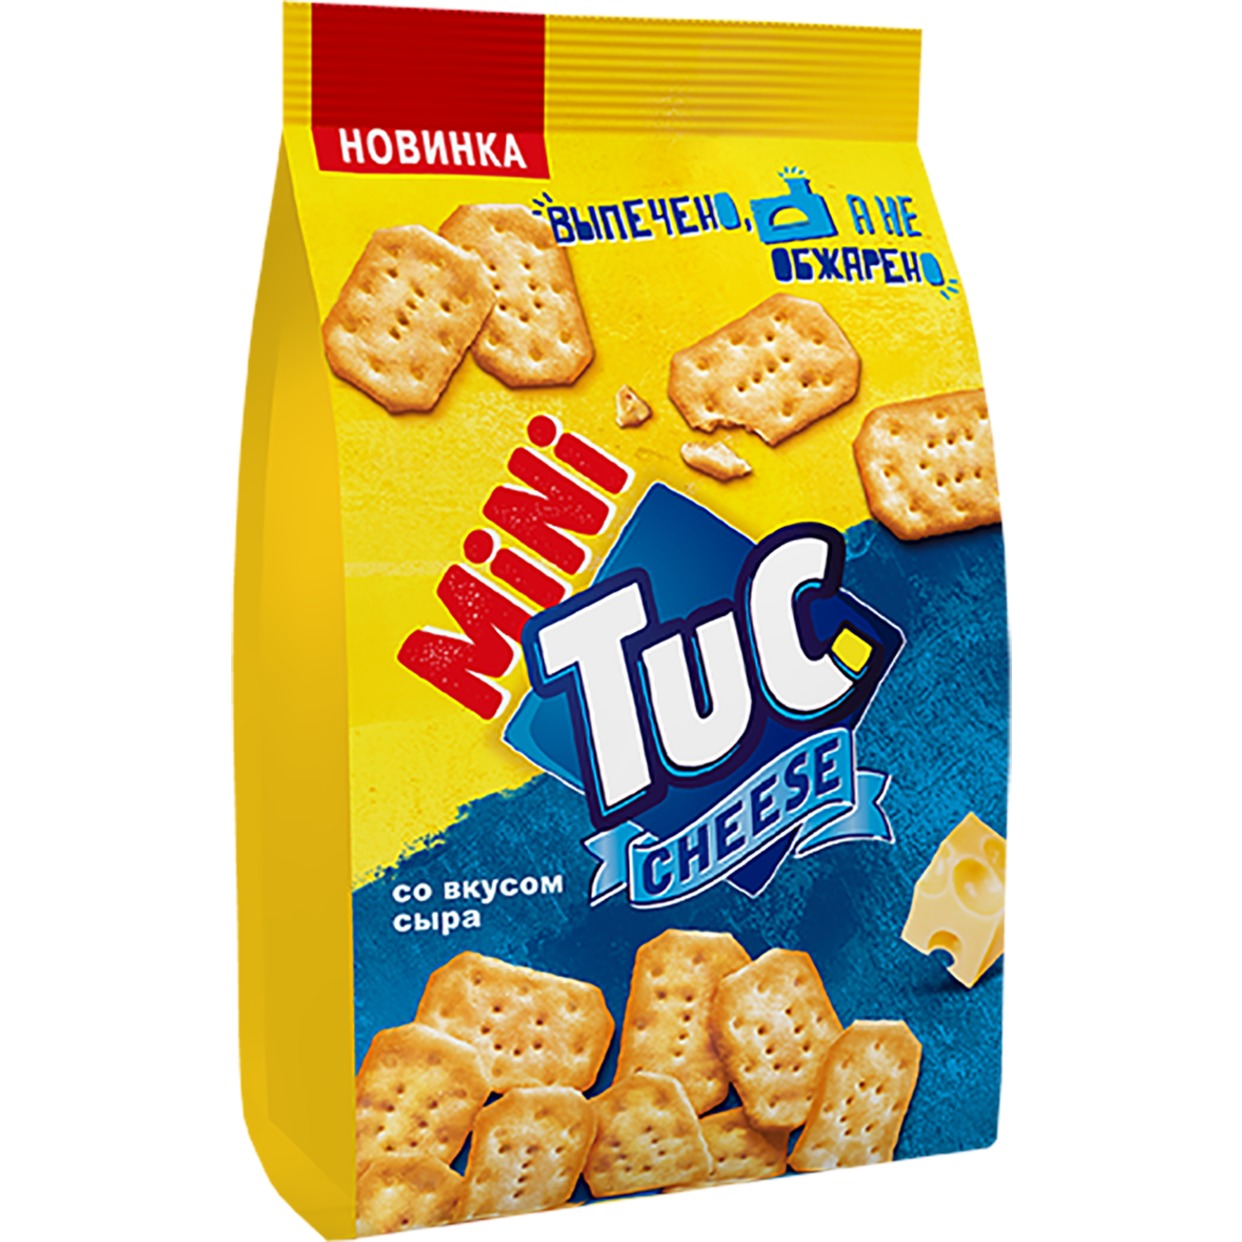 Крекер «TUC mini» со вкусом сыра 100г